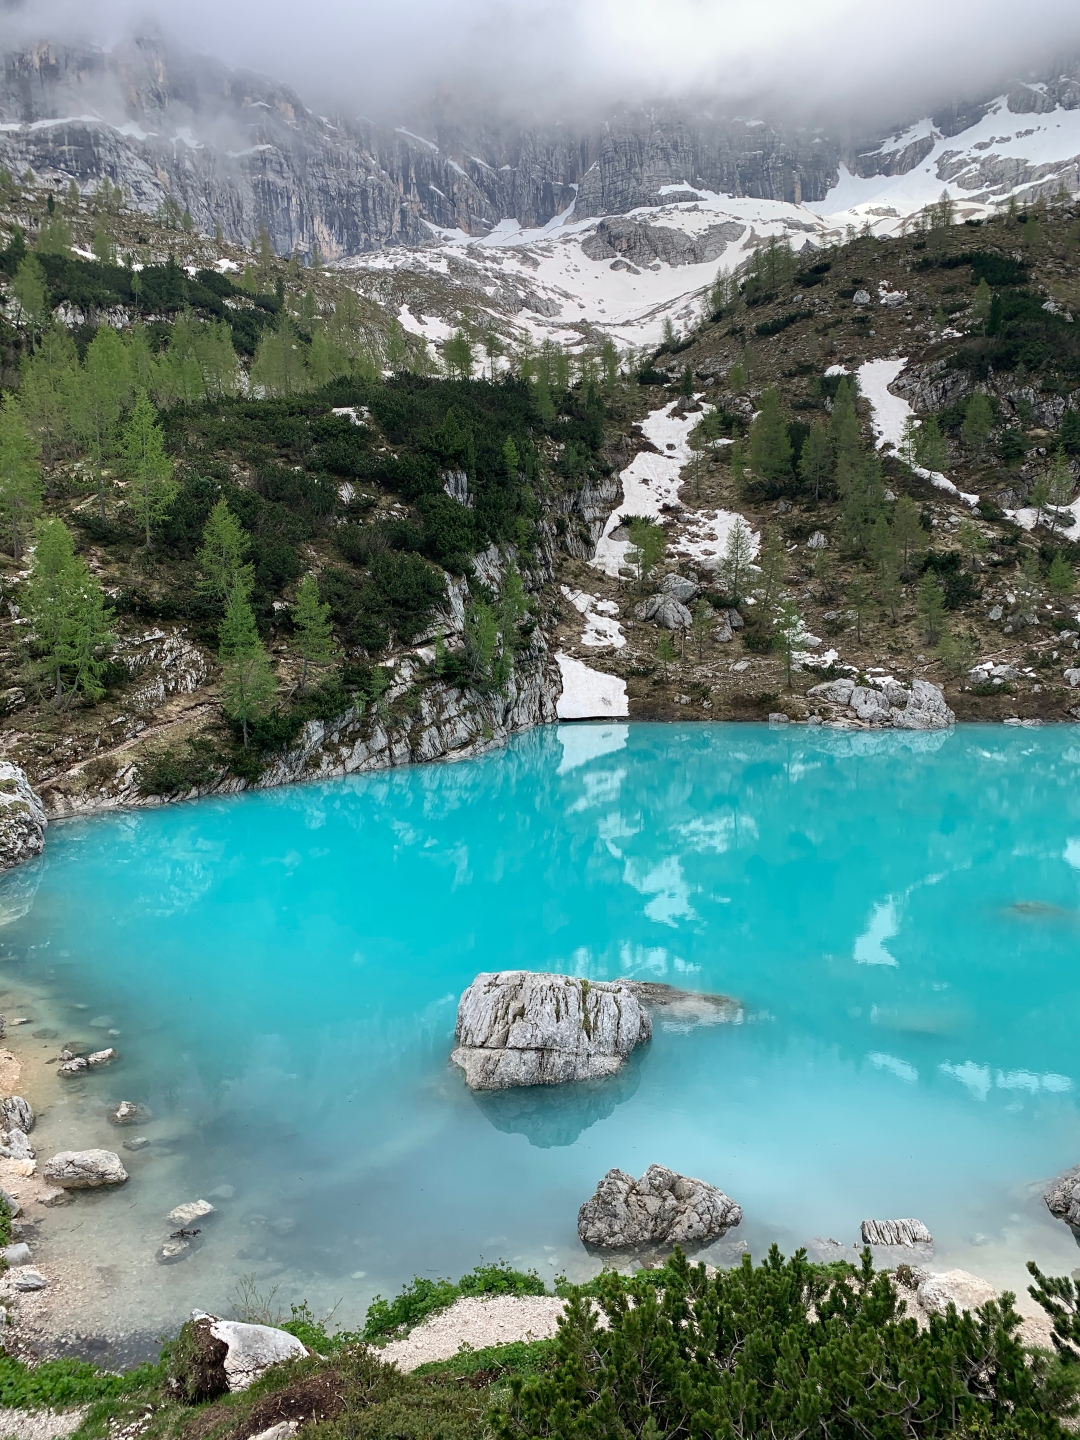 Ovo tirkizno jezero na sjeveru Italije koje ostavlja bez daha moglo bi se naći i na vašoj travel listi